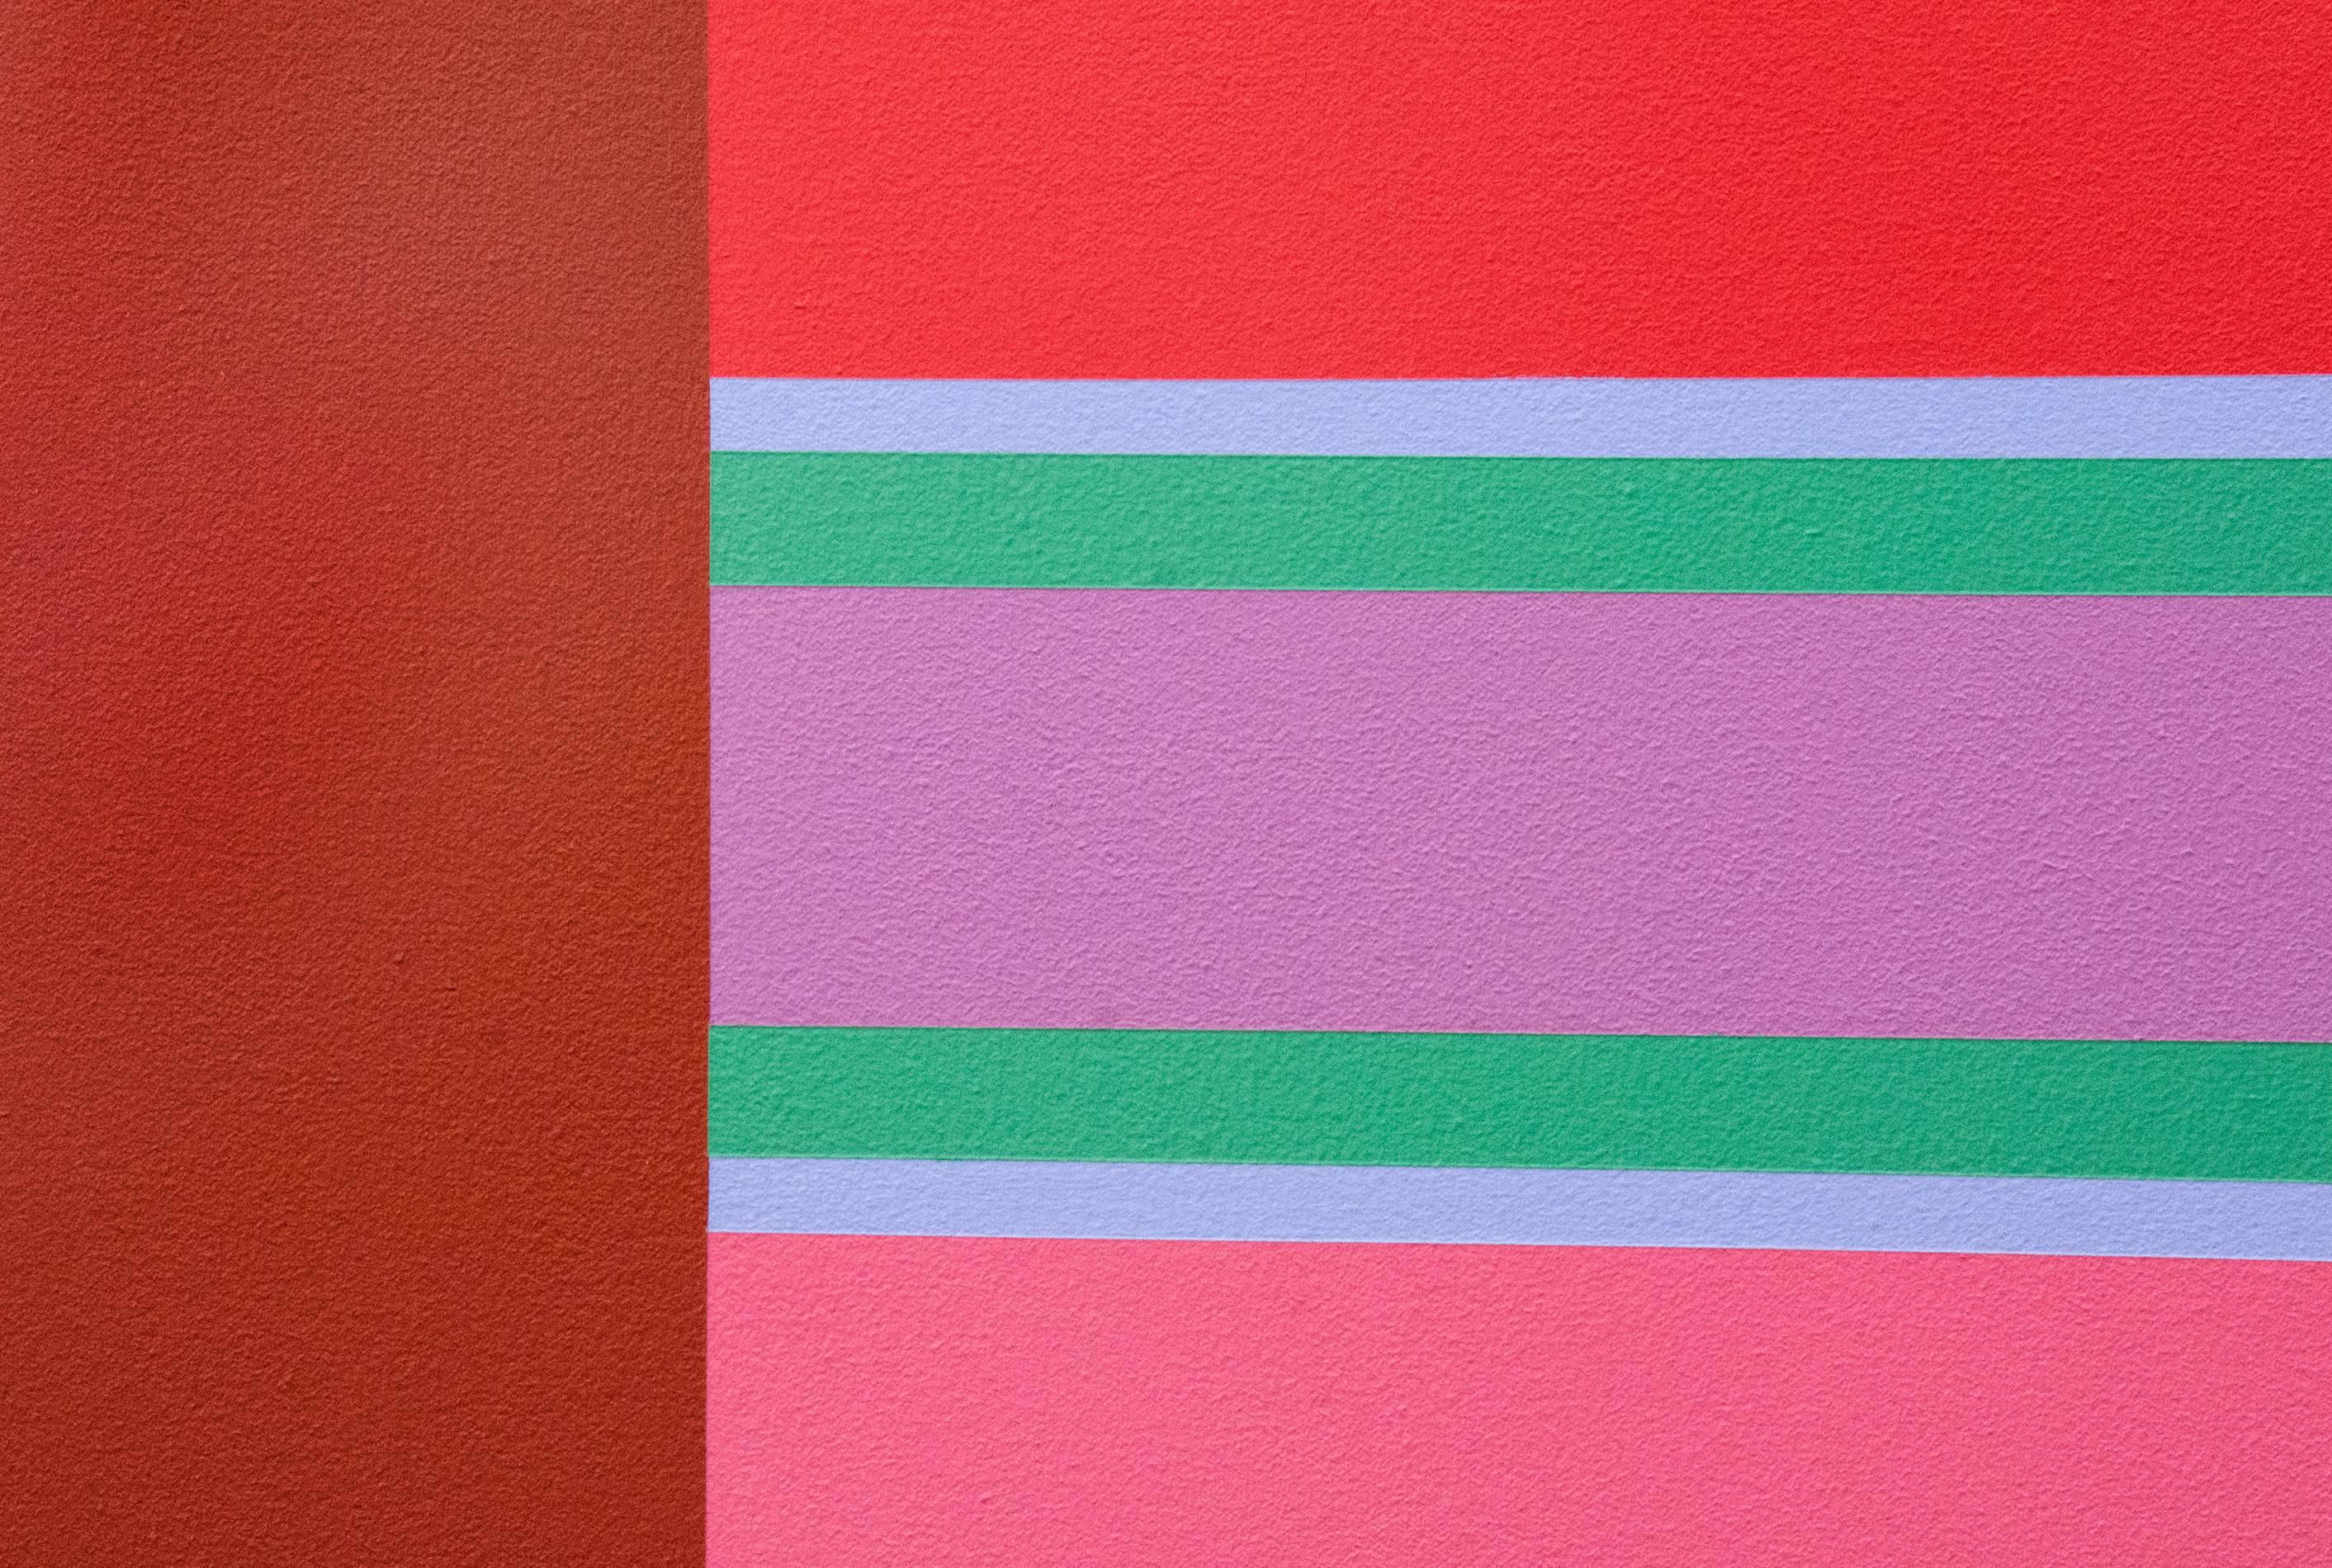 Oasis 4/4 - lebendige, farbenfrohe geometrische Abstraktion, modernist, Acryl auf Leinwand (Geometrische Abstraktion), Painting, von Burton Kramer